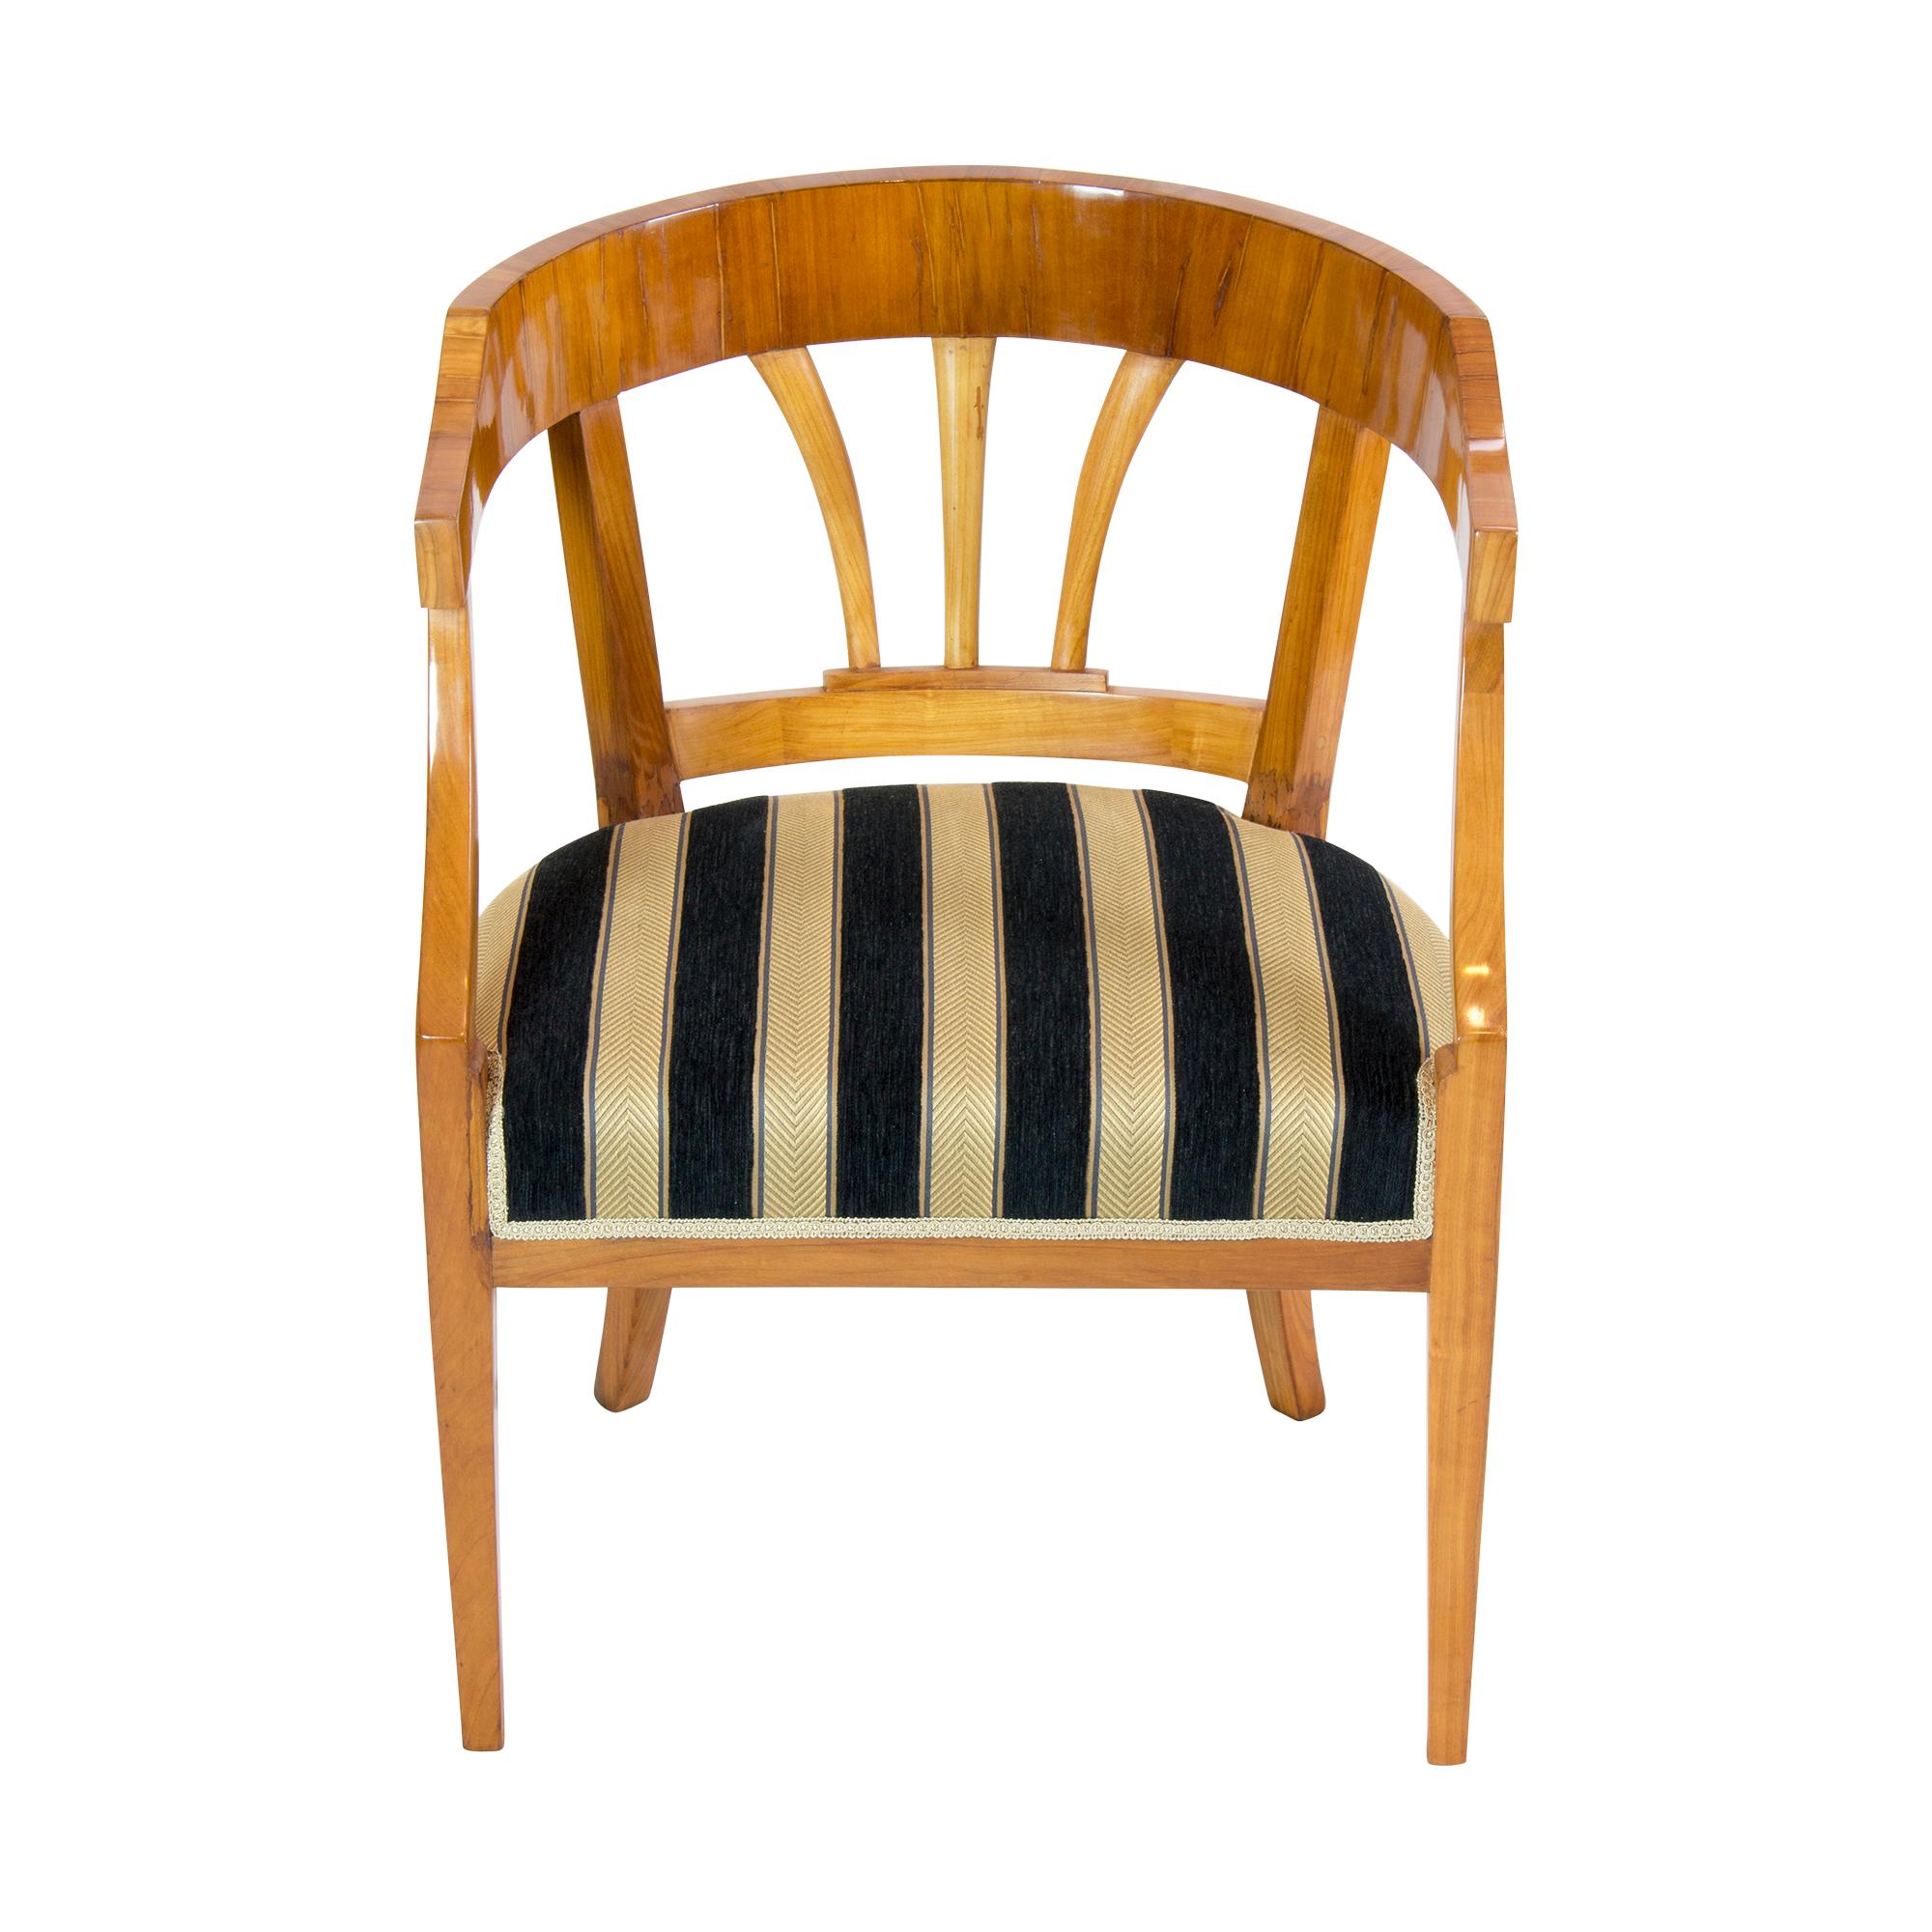 Schöner zeitloser Biedermeier /Empire Sessel aus dem frühen 19. Jahrhundert. Der Sessel wurde aus massiver Kirsche und auch aus furnierter Kirsche hergestellt. Der Rücken ist rund und in der Mitte des Rückens befinden sich 3 Schilfrohre. Die Beine